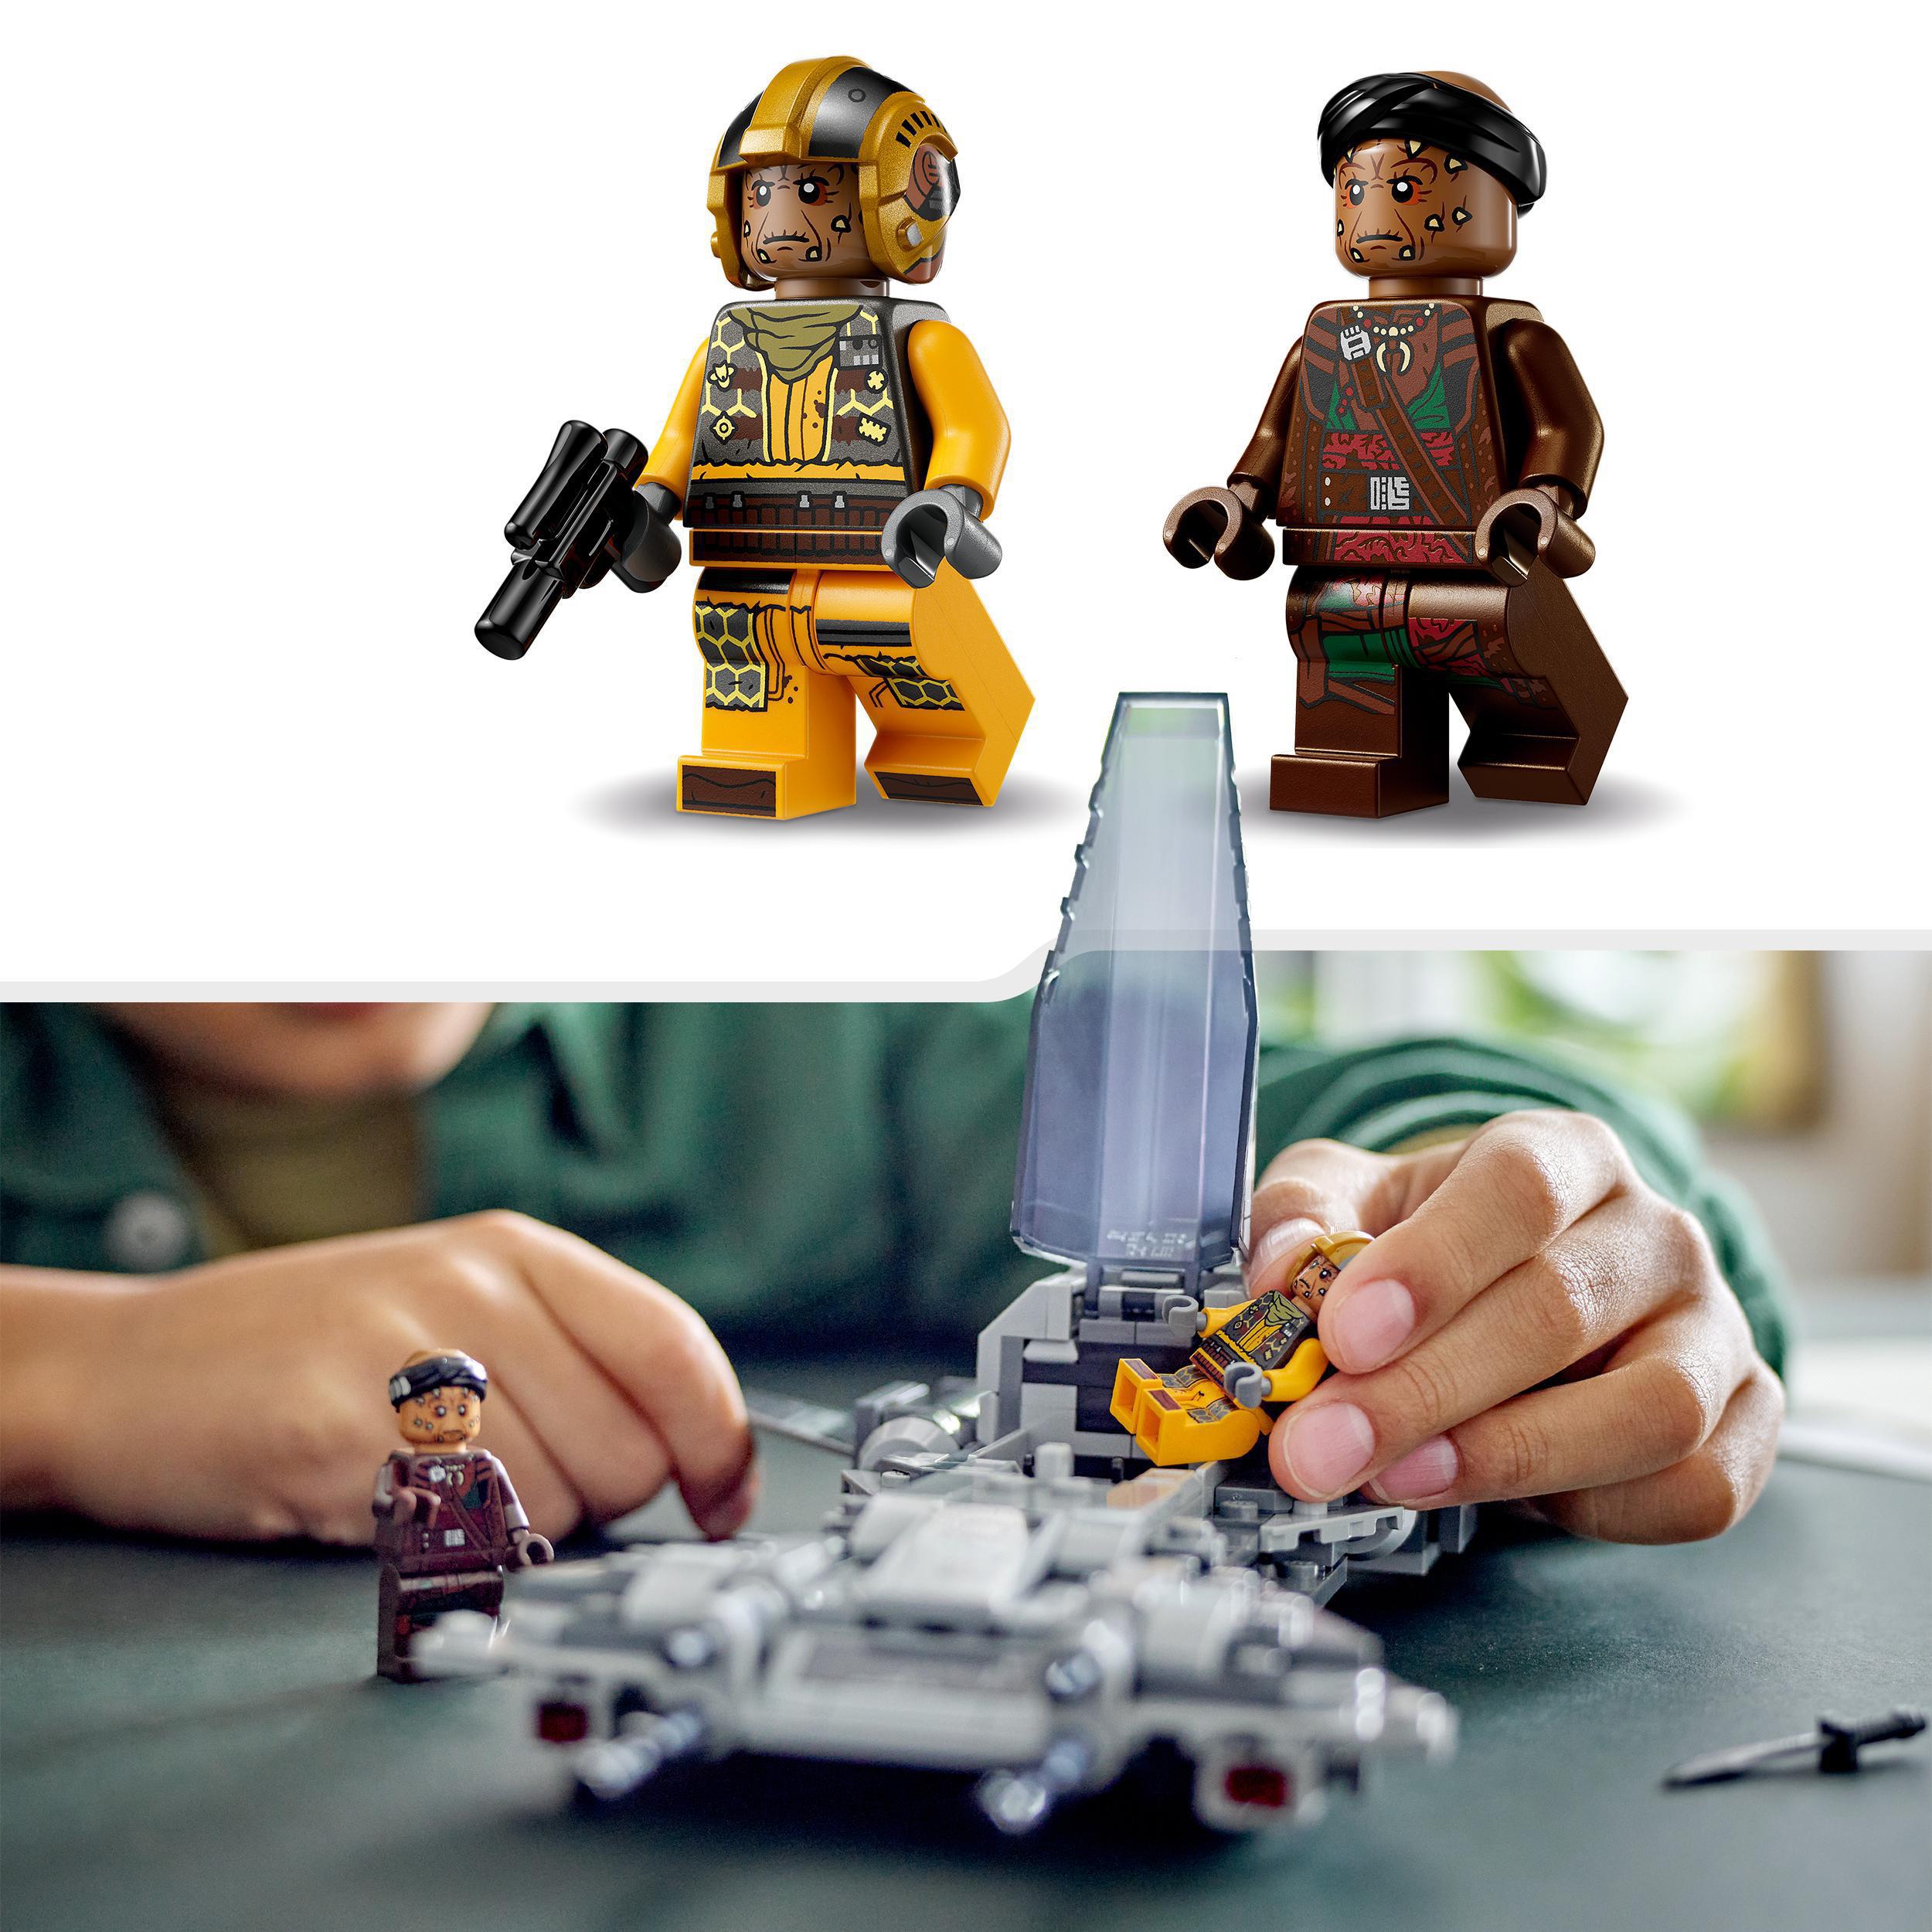 LEGO Star Wars 75346 der Mehrfarbig Piraten Bausatz, Snubfighter